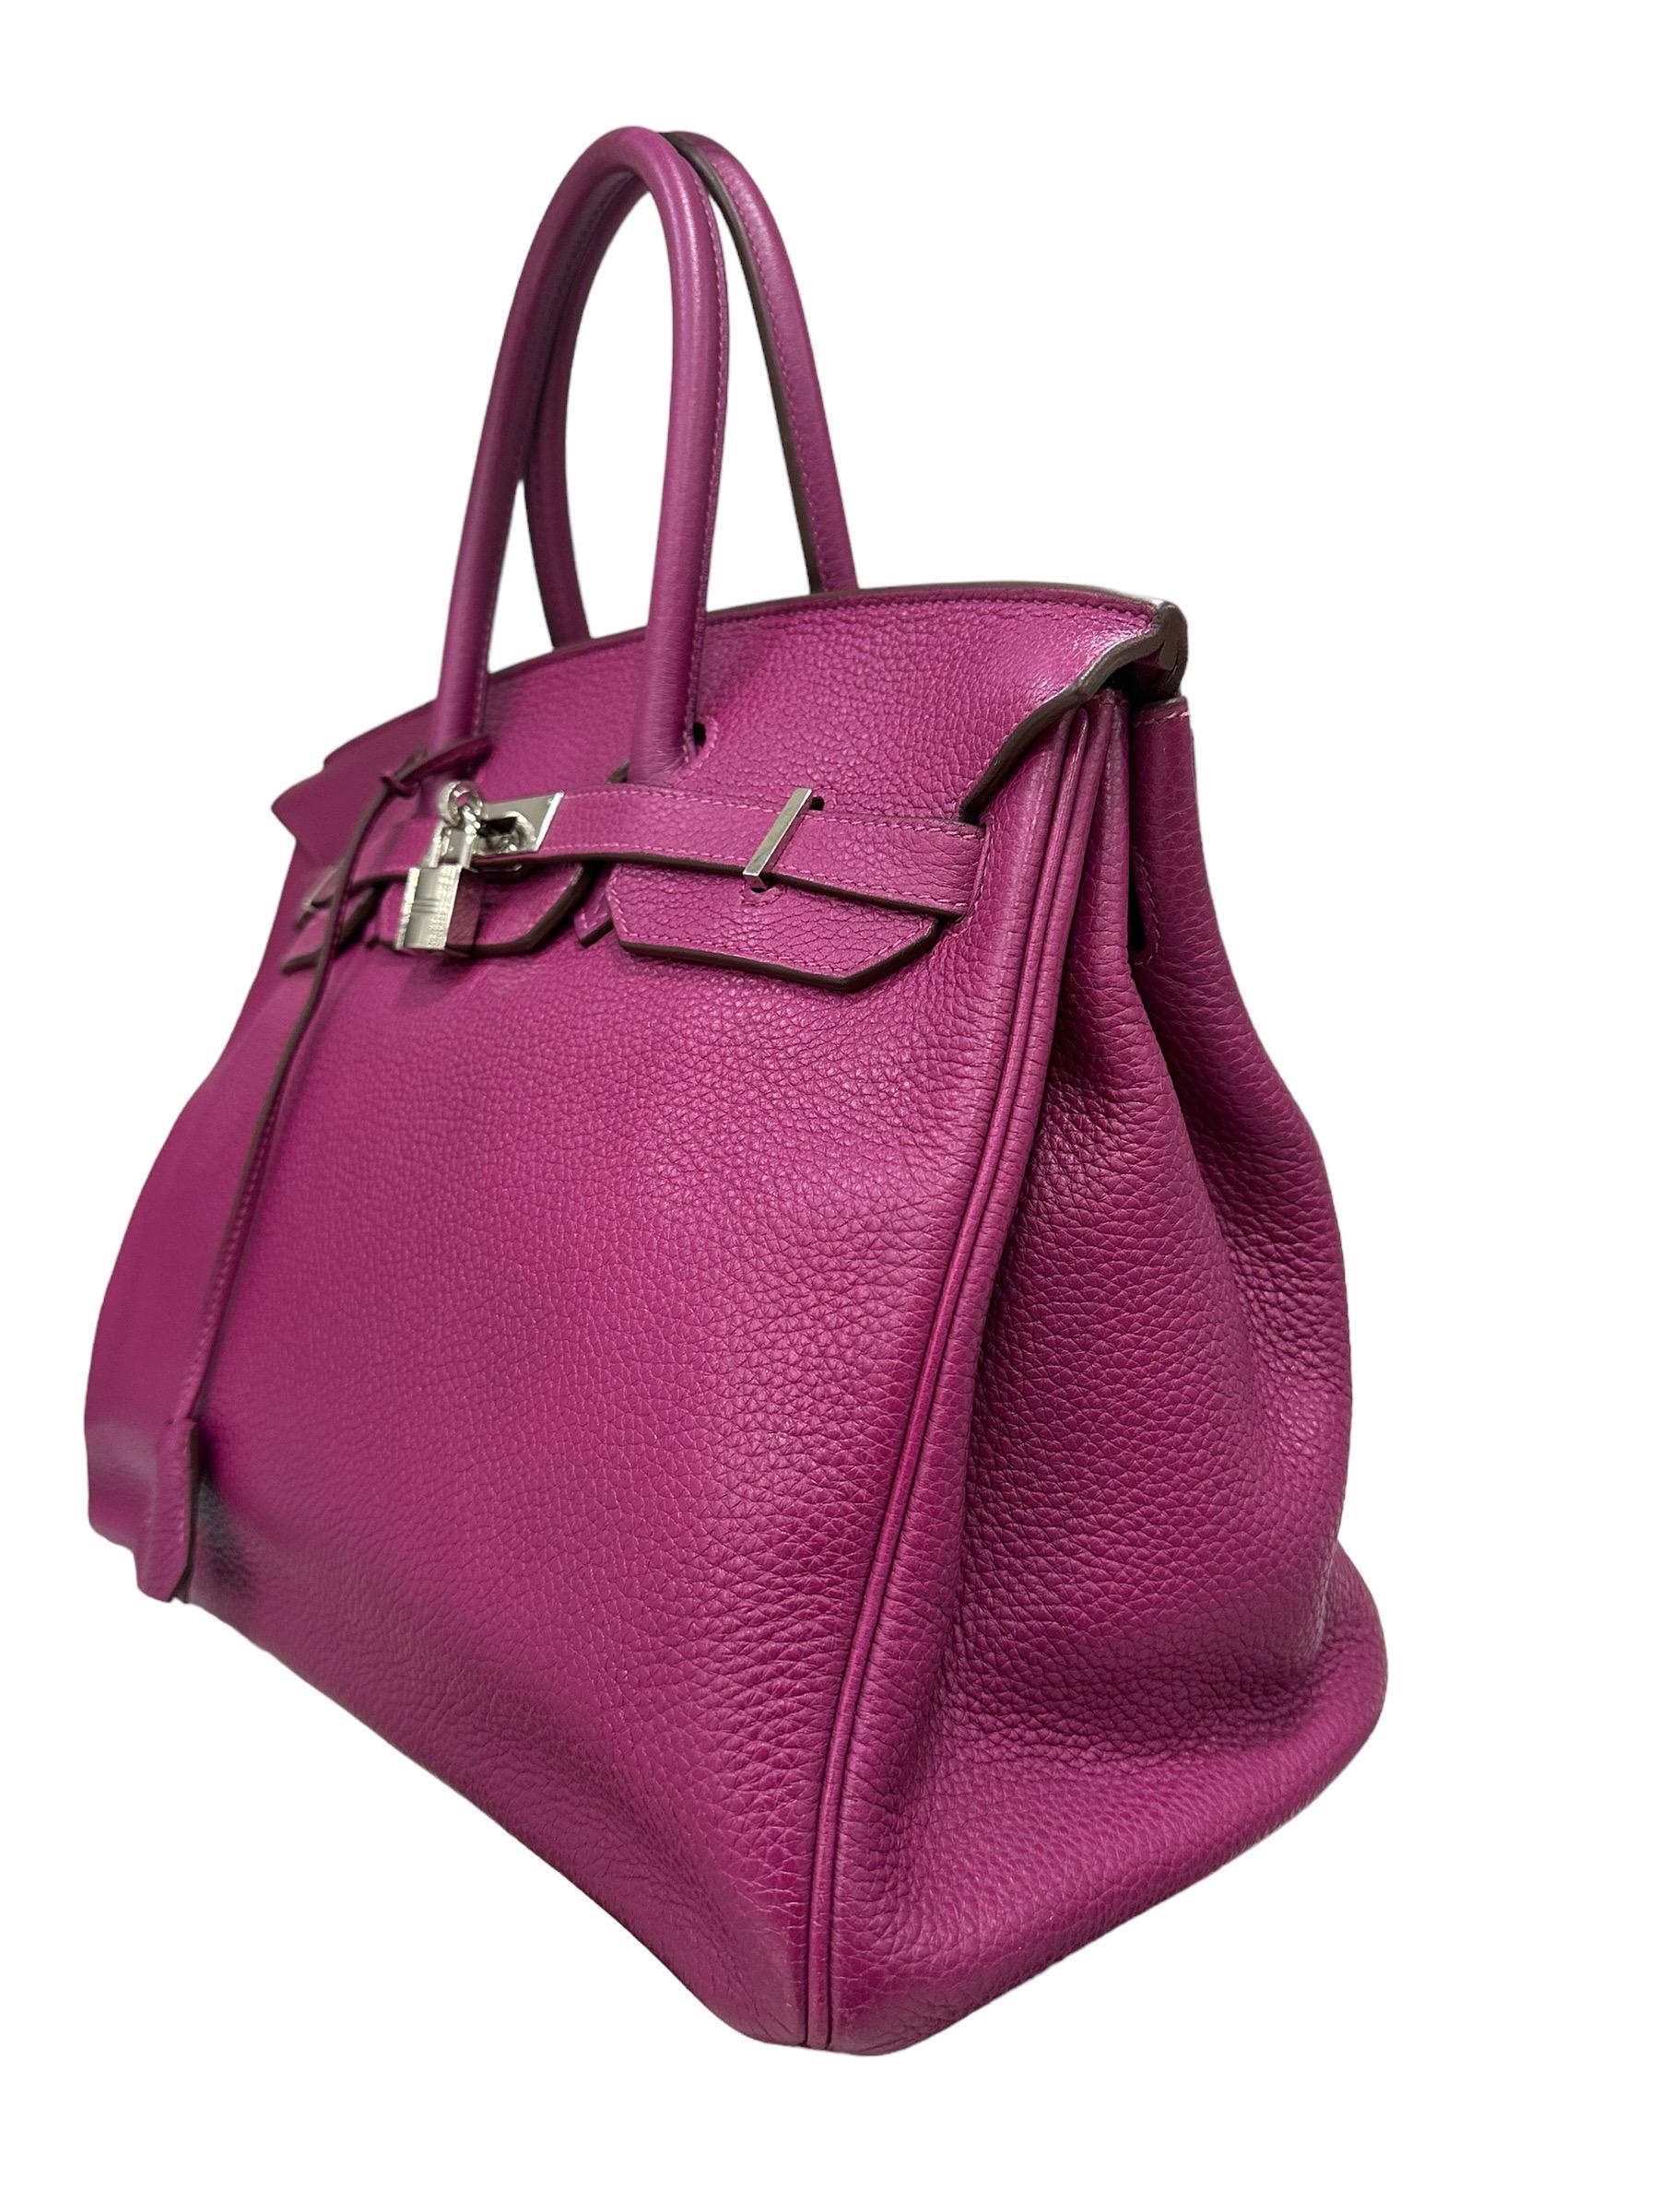  1950 Hermès Birkin 35 Courchevel Tosca Top Handle Bag Pour femmes 